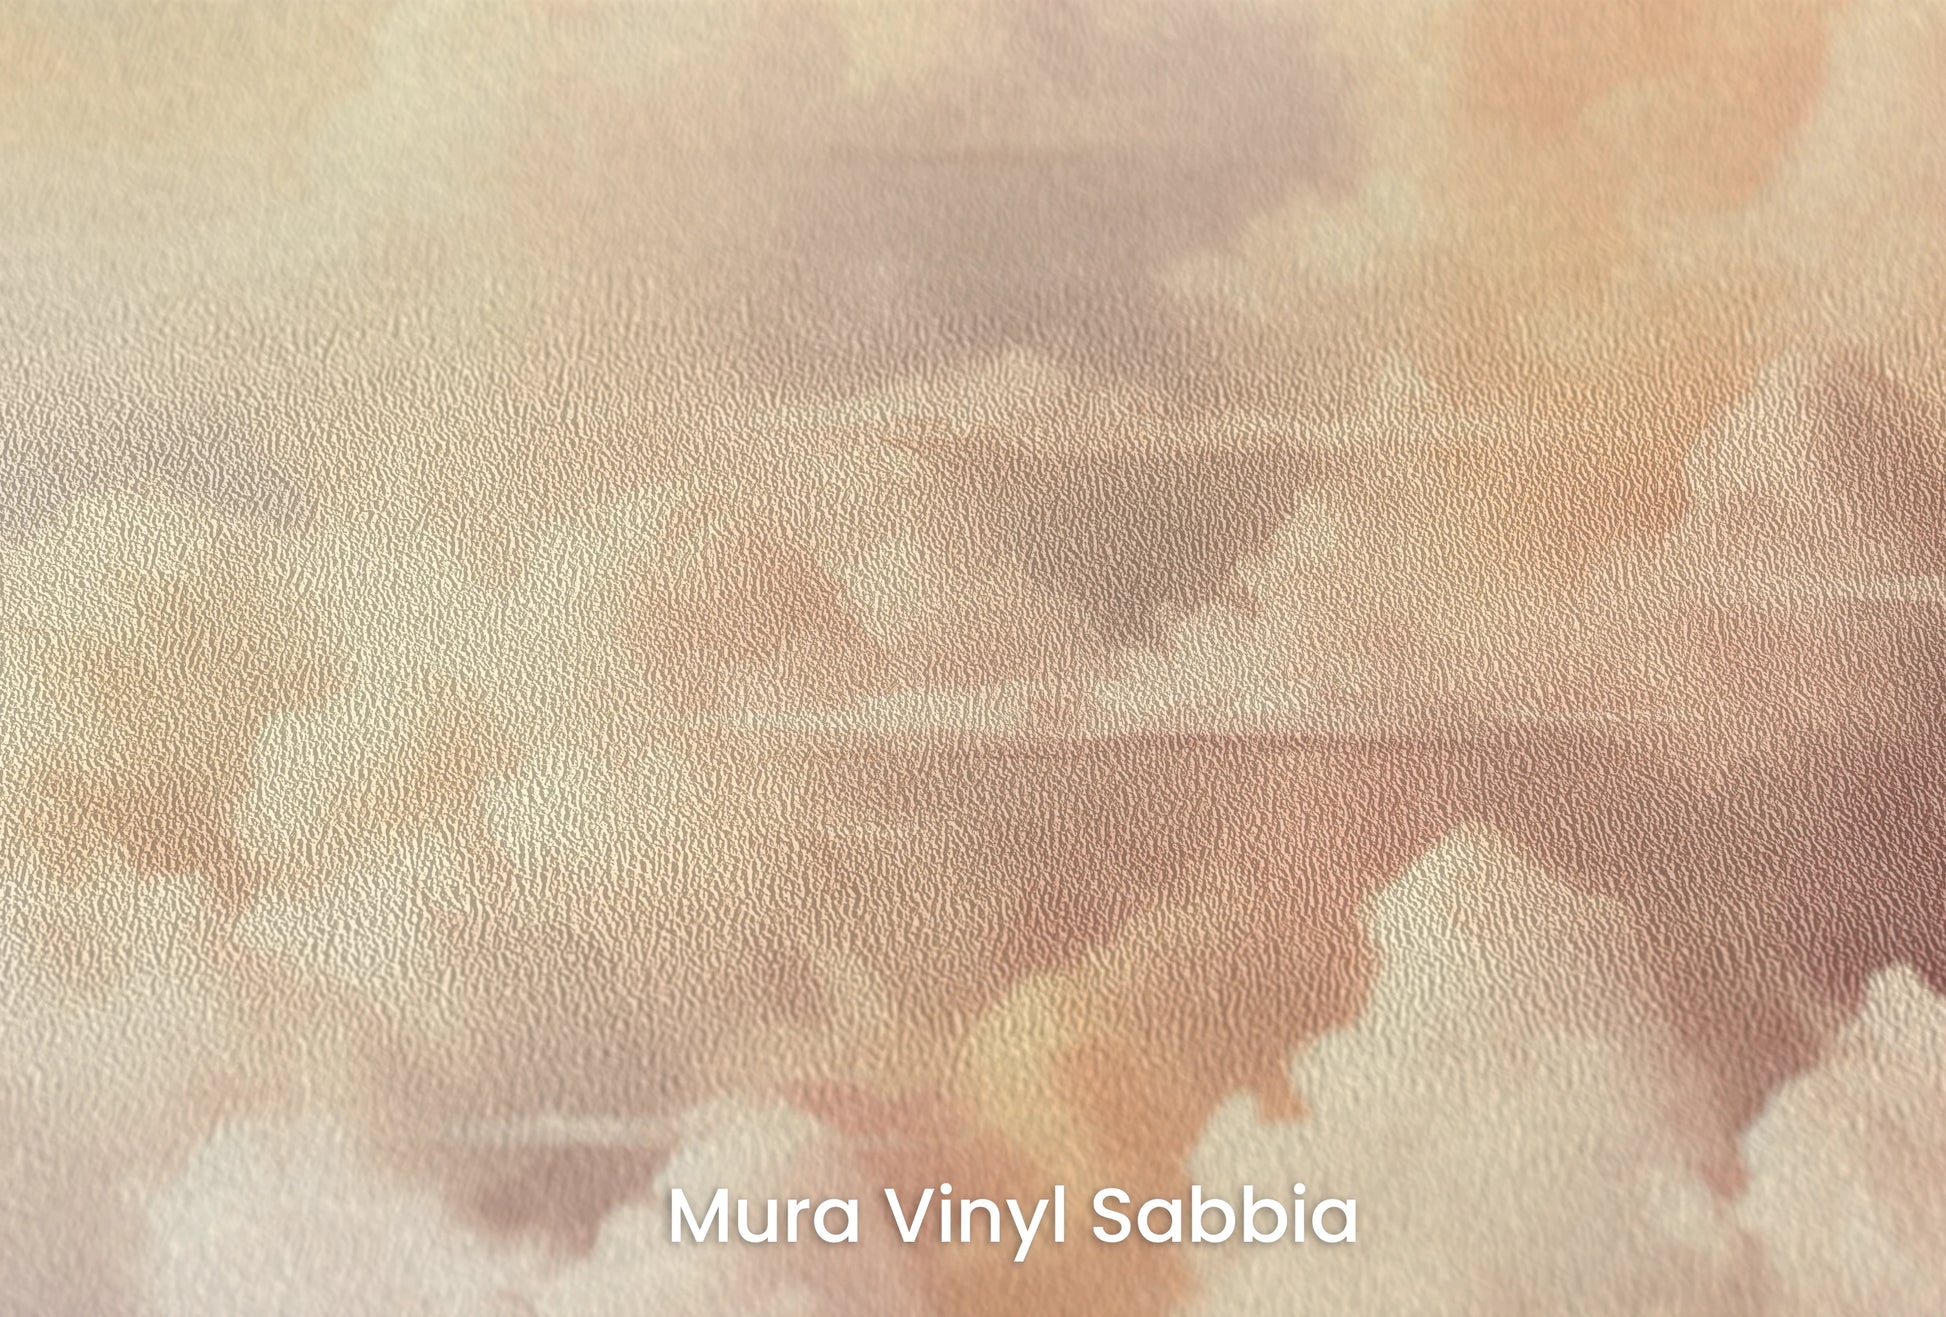 Zbliżenie na artystyczną fototapetę o nazwie Morning's Warmth na podłożu Mura Vinyl Sabbia struktura grubego ziarna piasku.